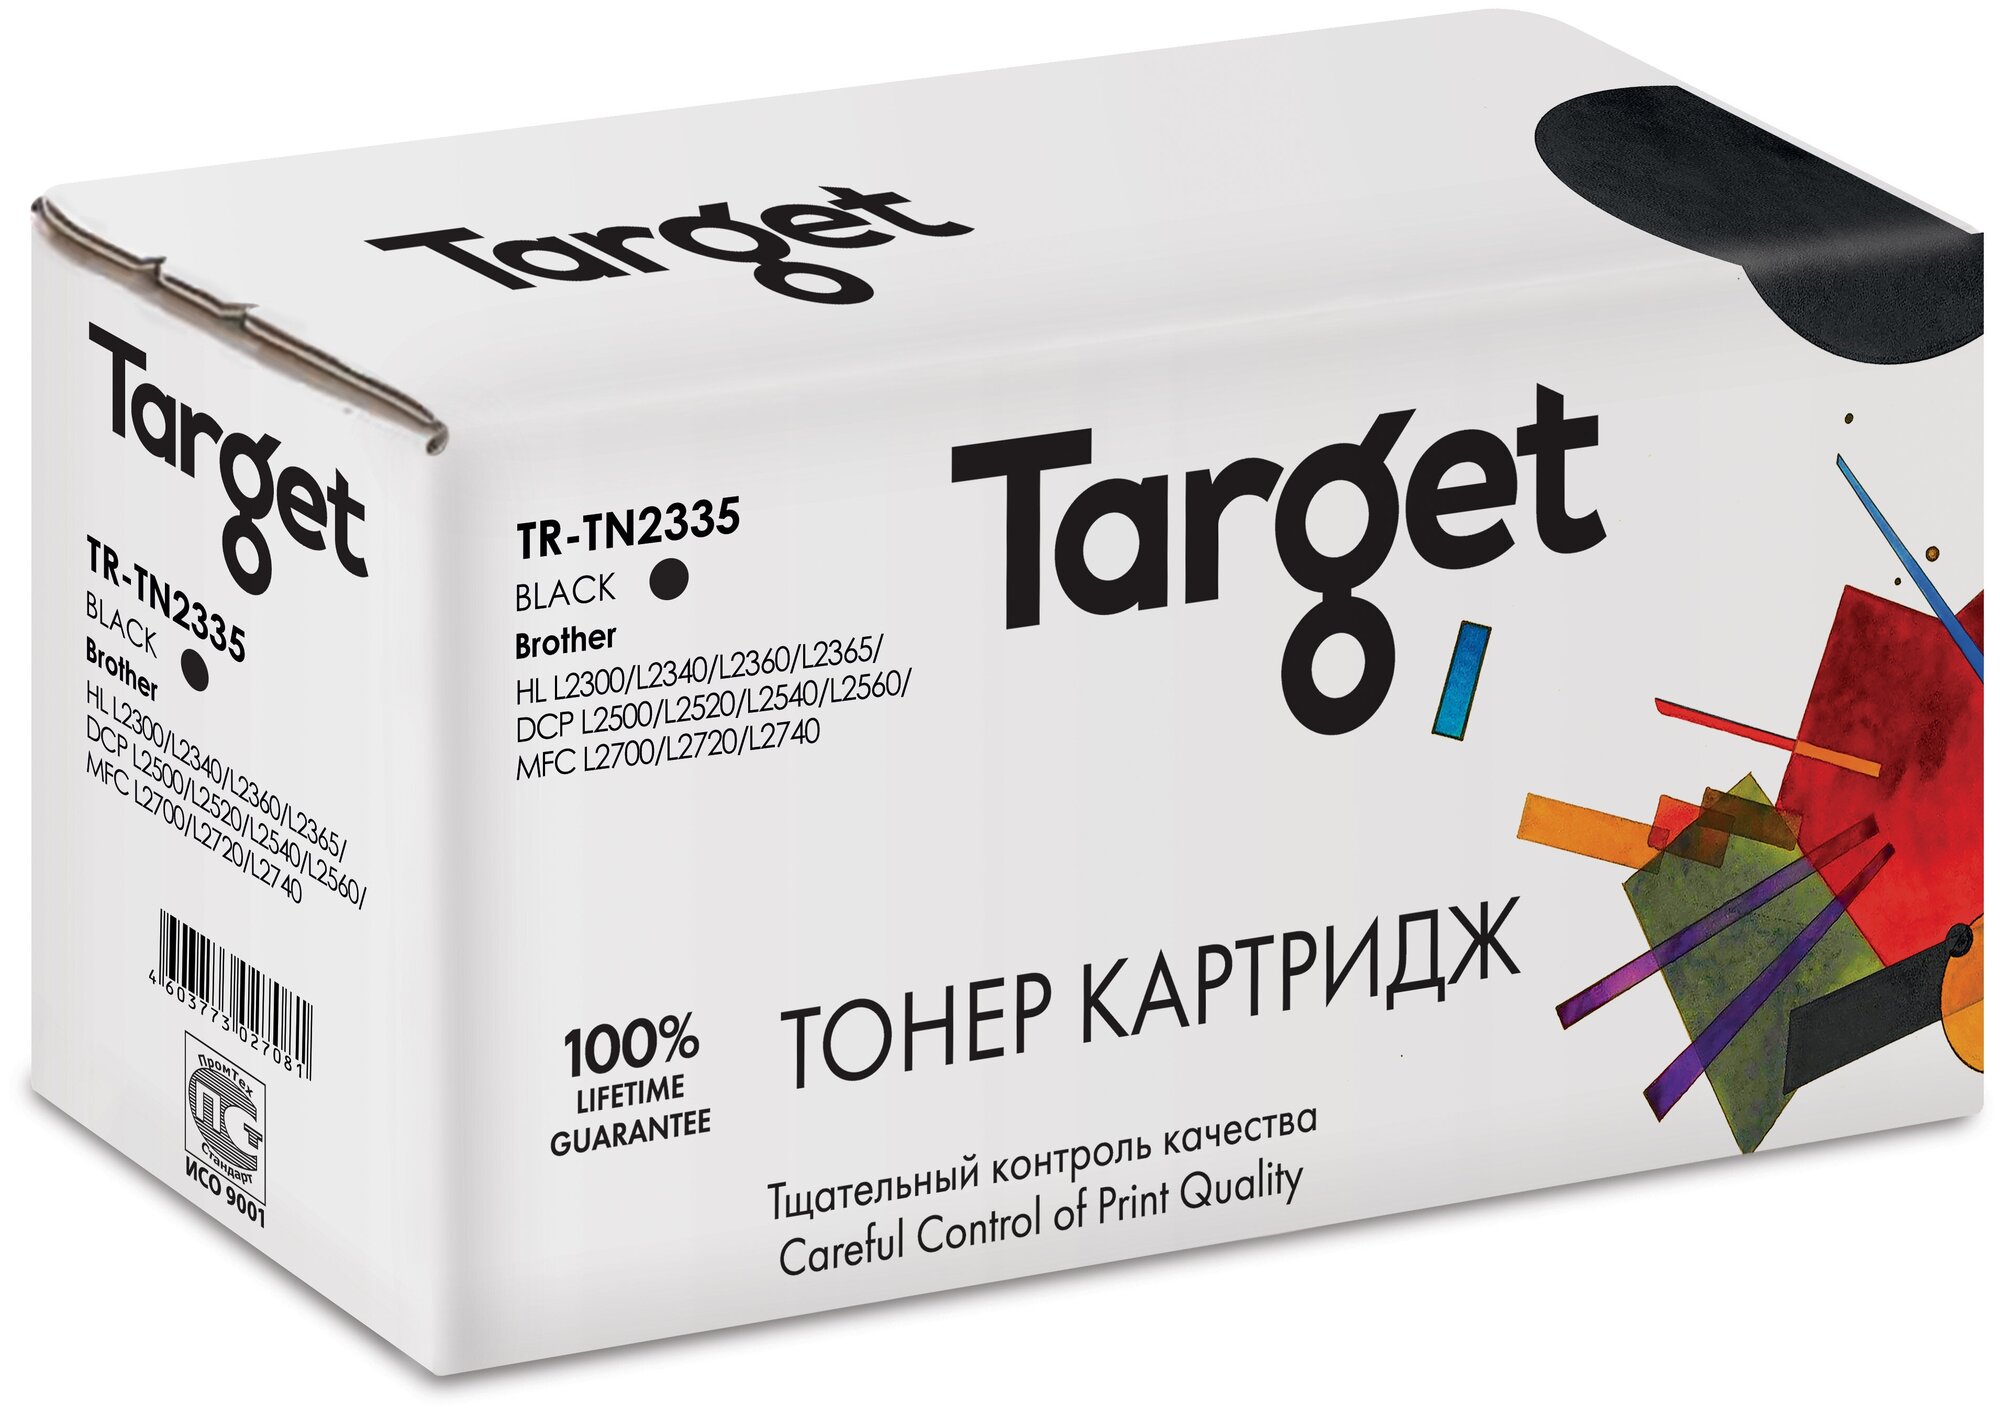 Картридж Target TN2335, черный, для лазерного принтера, совместимый